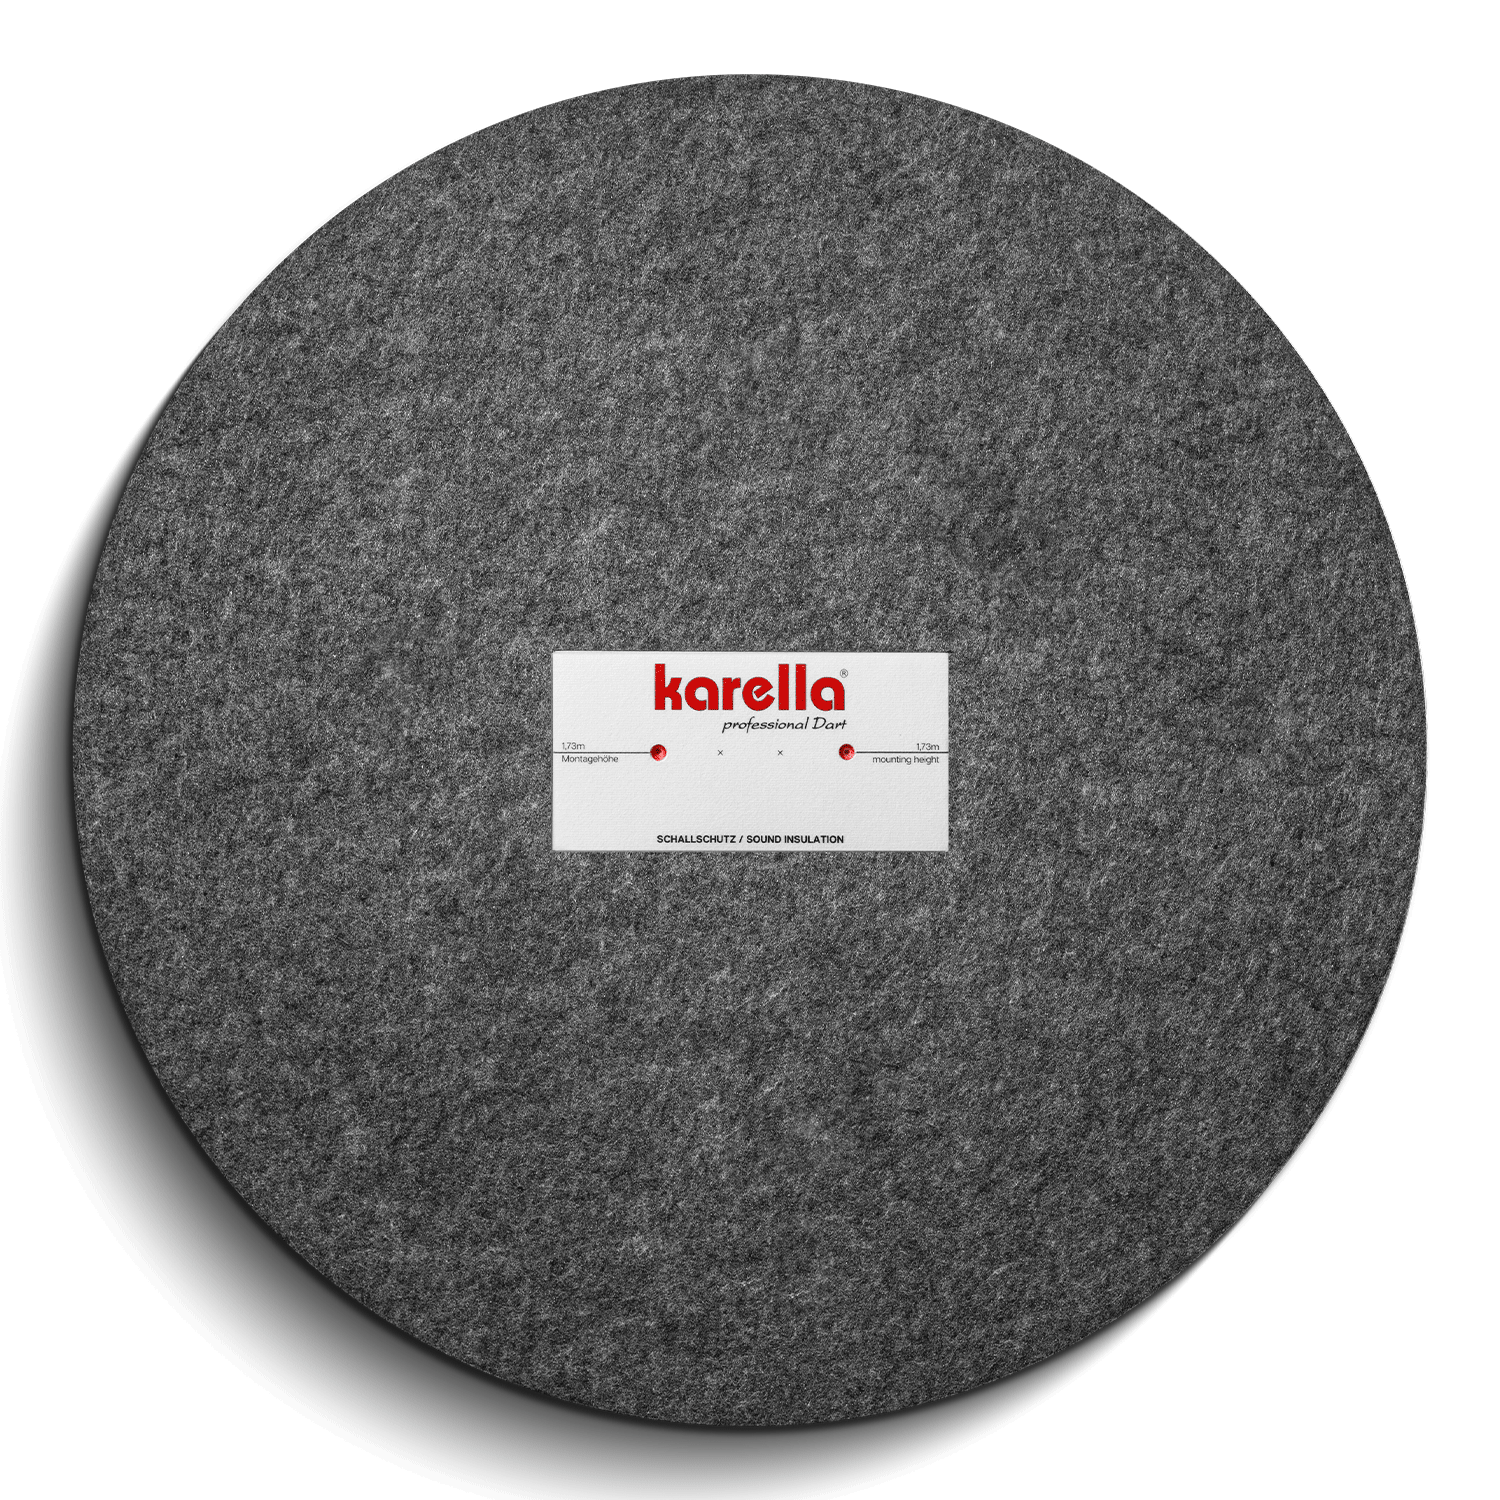 Karella Schallschutz für Steeldartboards mit integriertem Surround